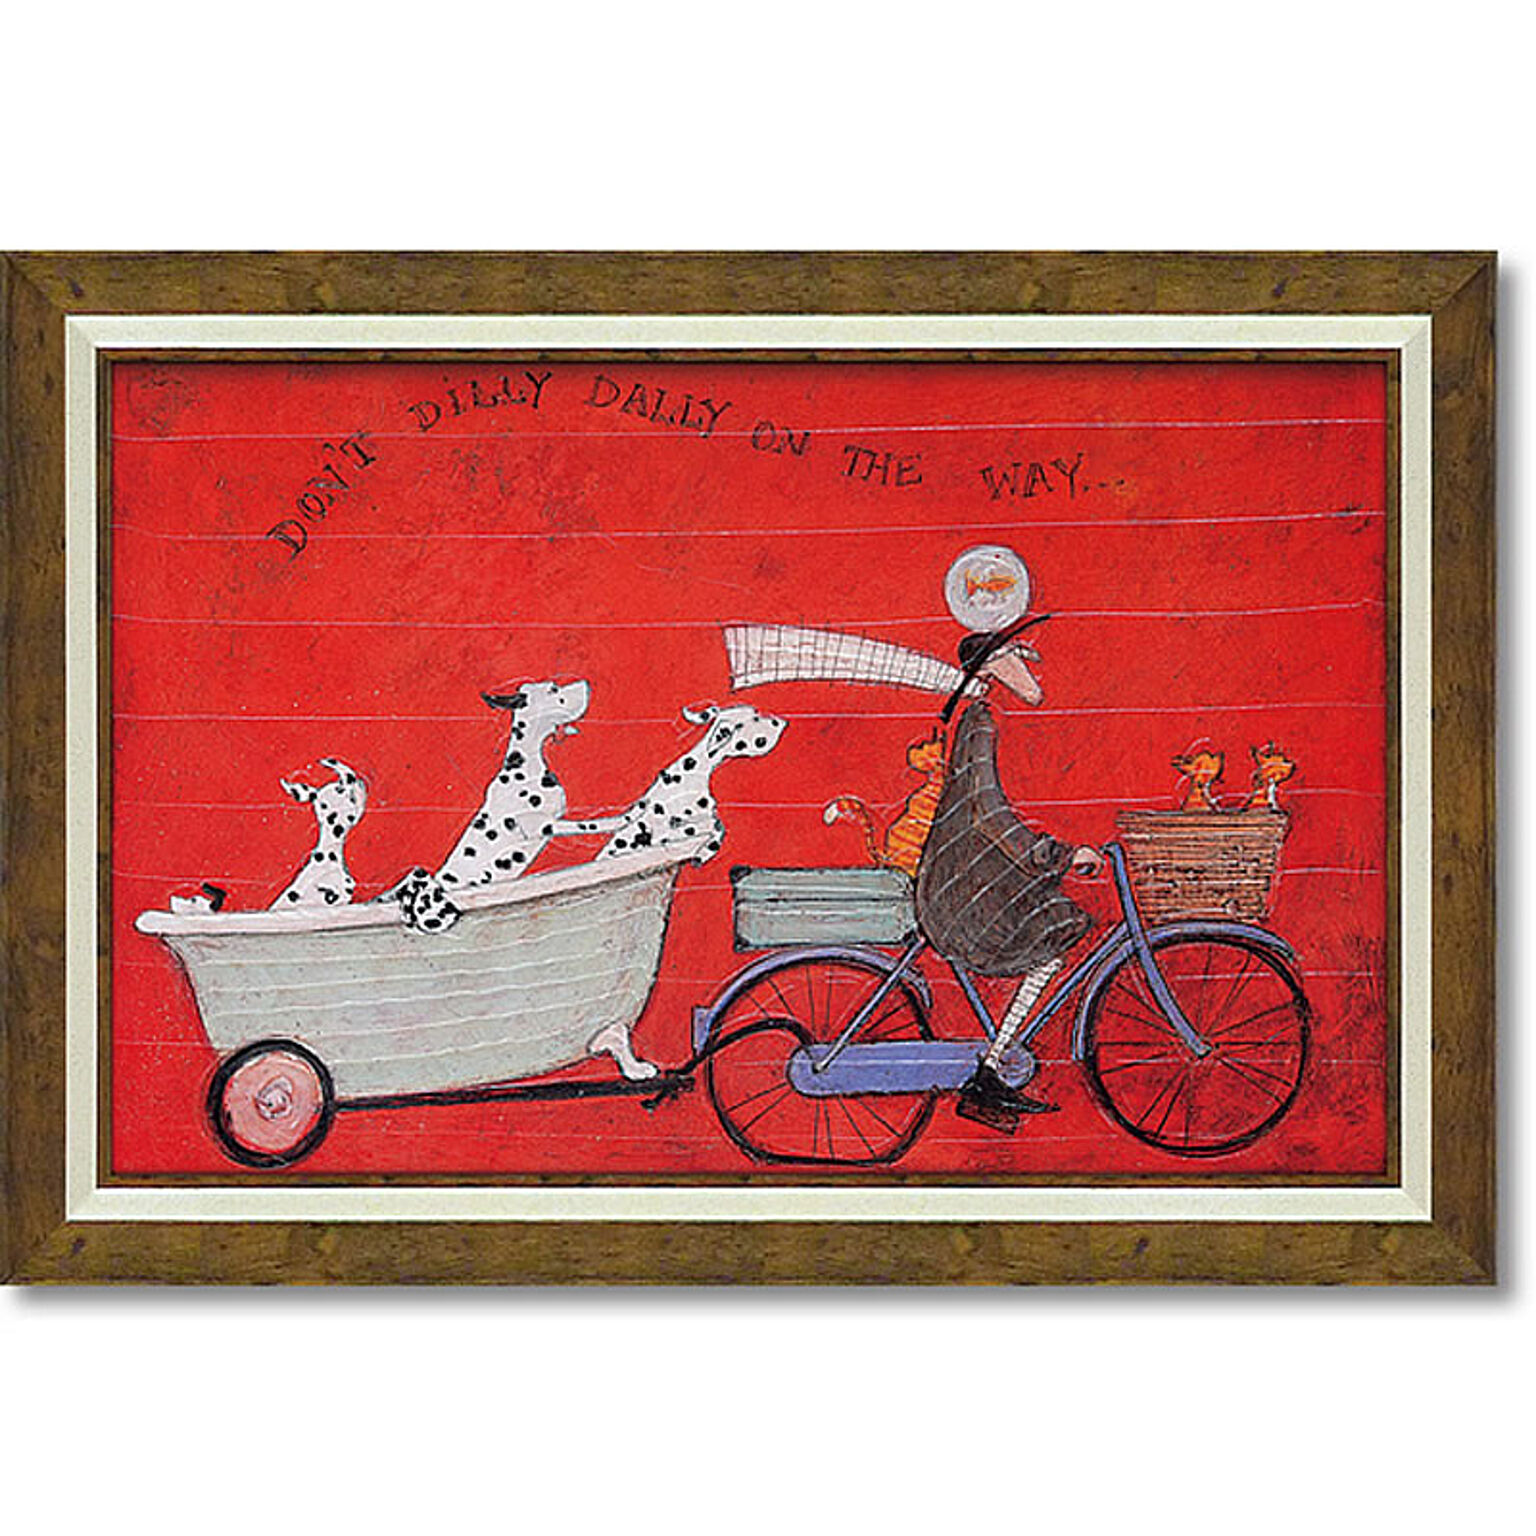 サムトフト ドンド ディリダリー Gel加工 絵画 インテリア 額入り 赤 自転車 犬 ダルメシアン 猫